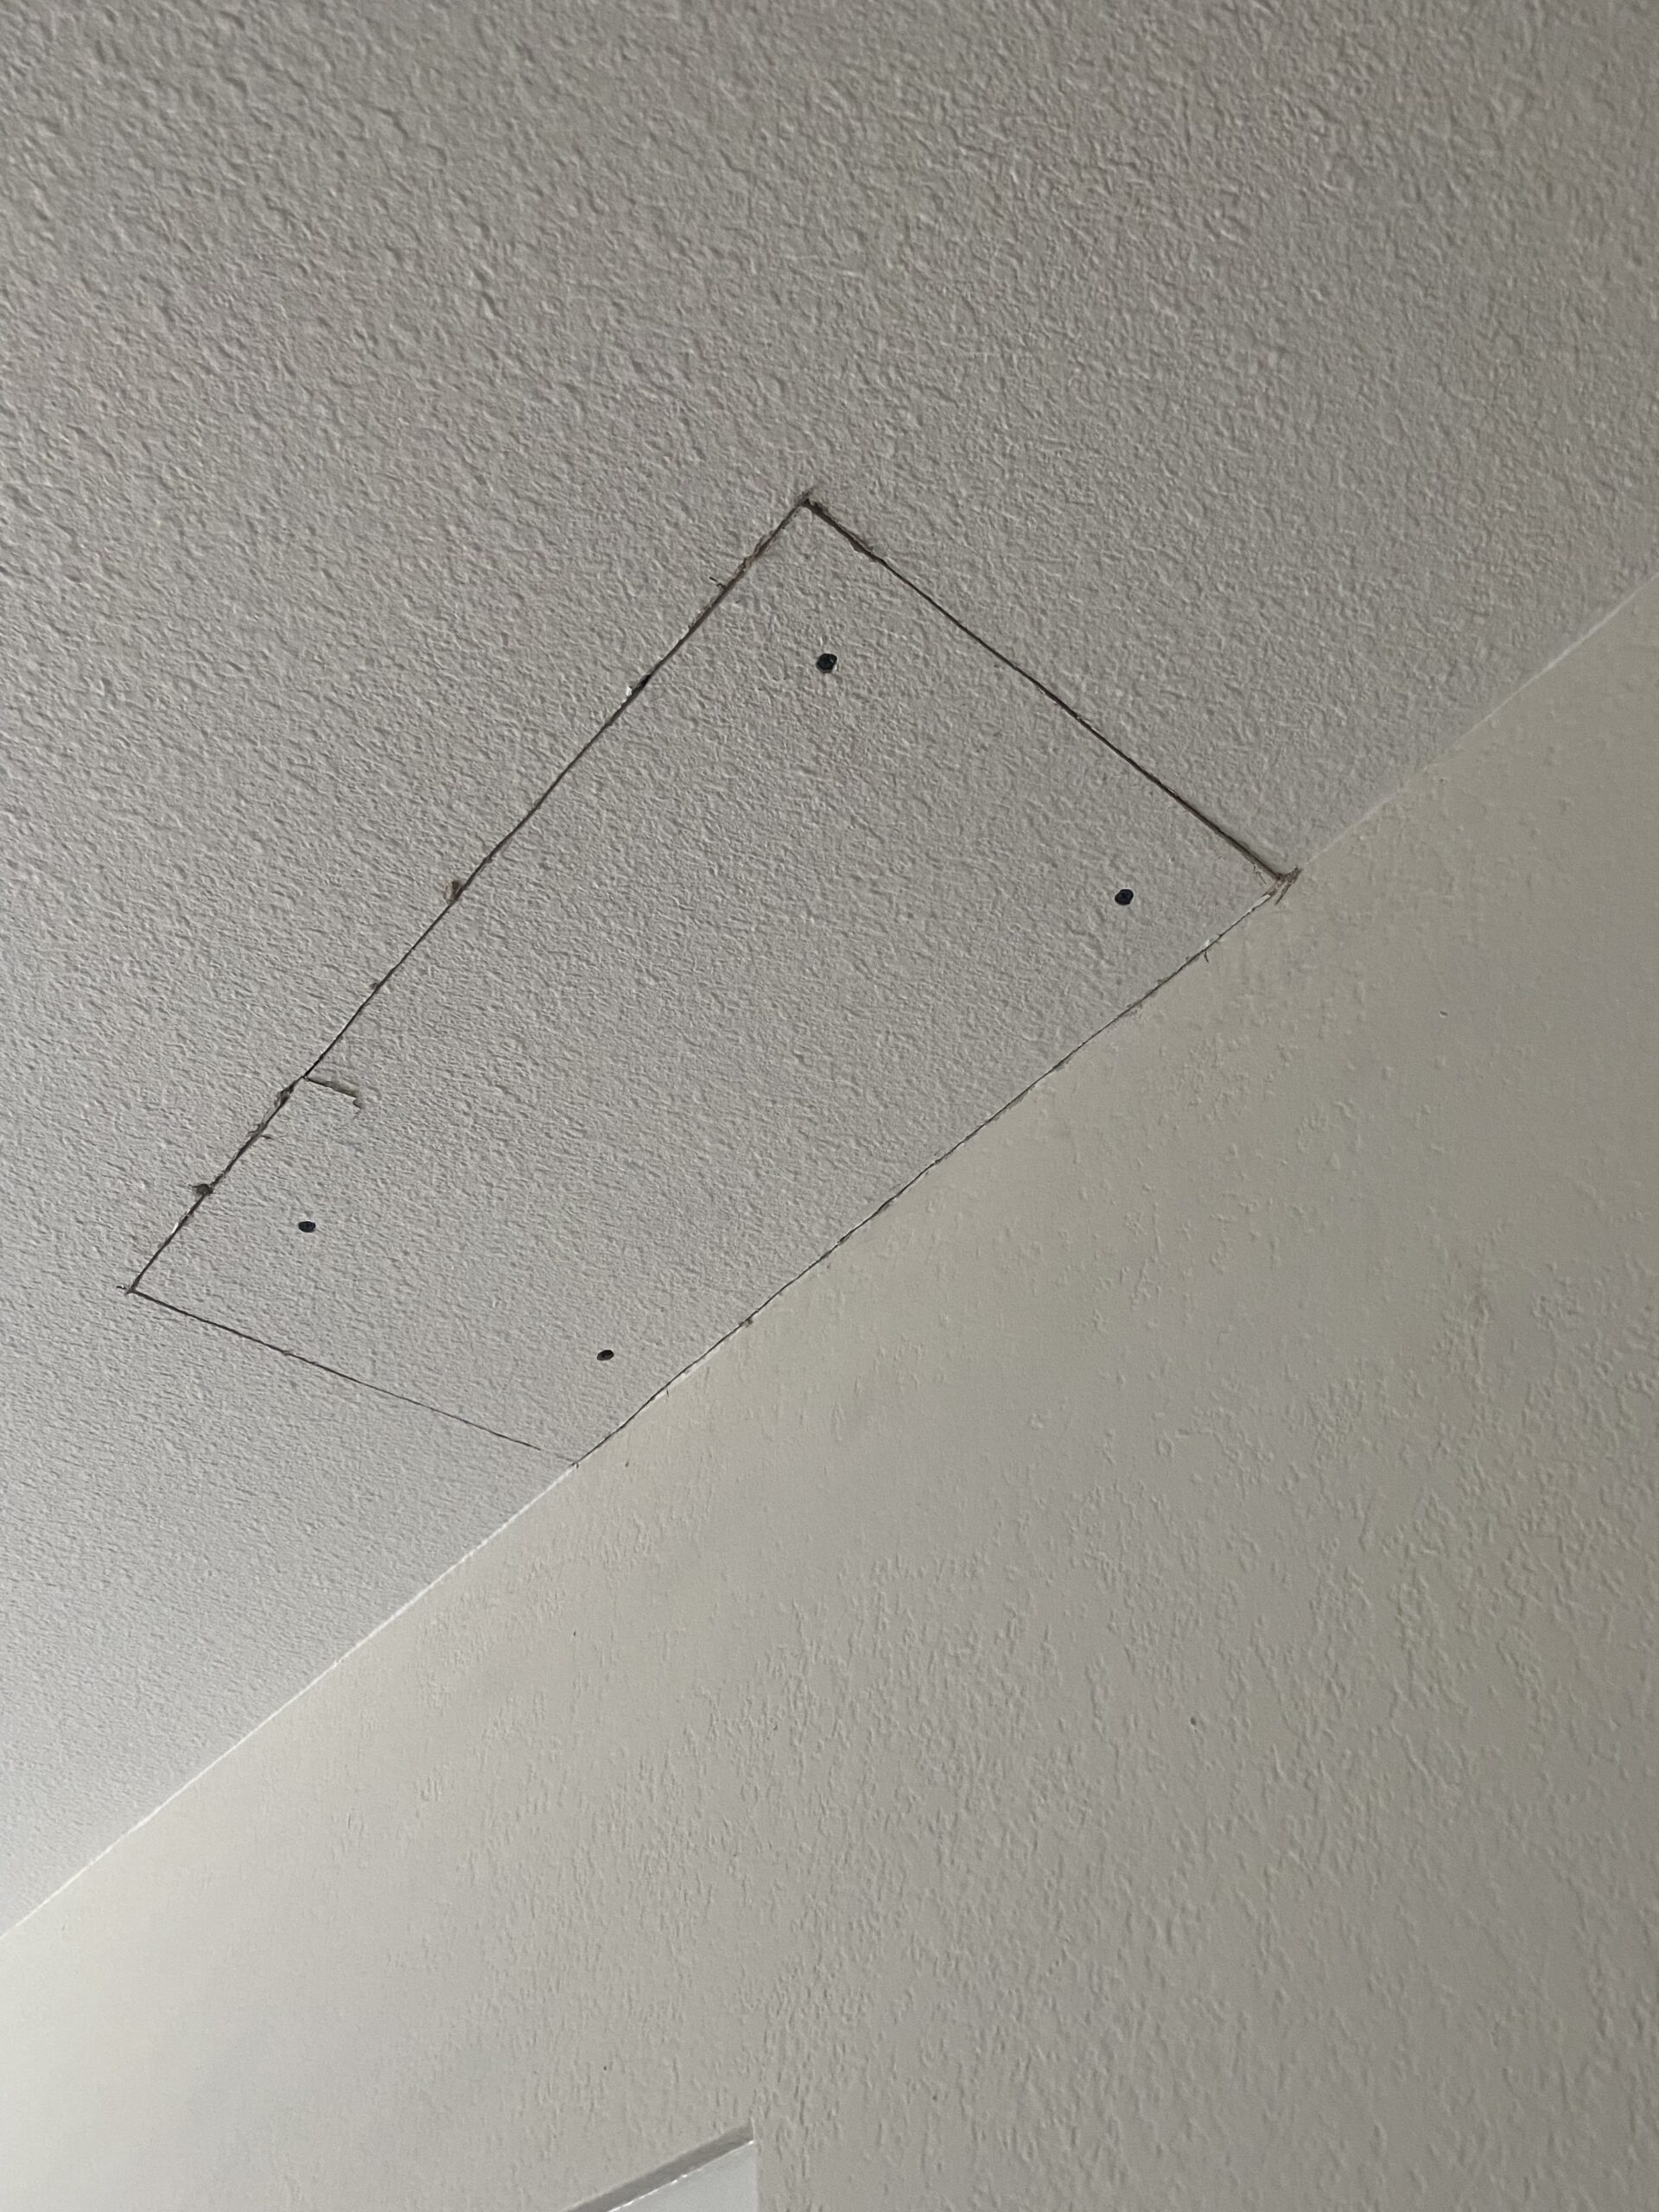 Bedroom ceiling drywall repair before